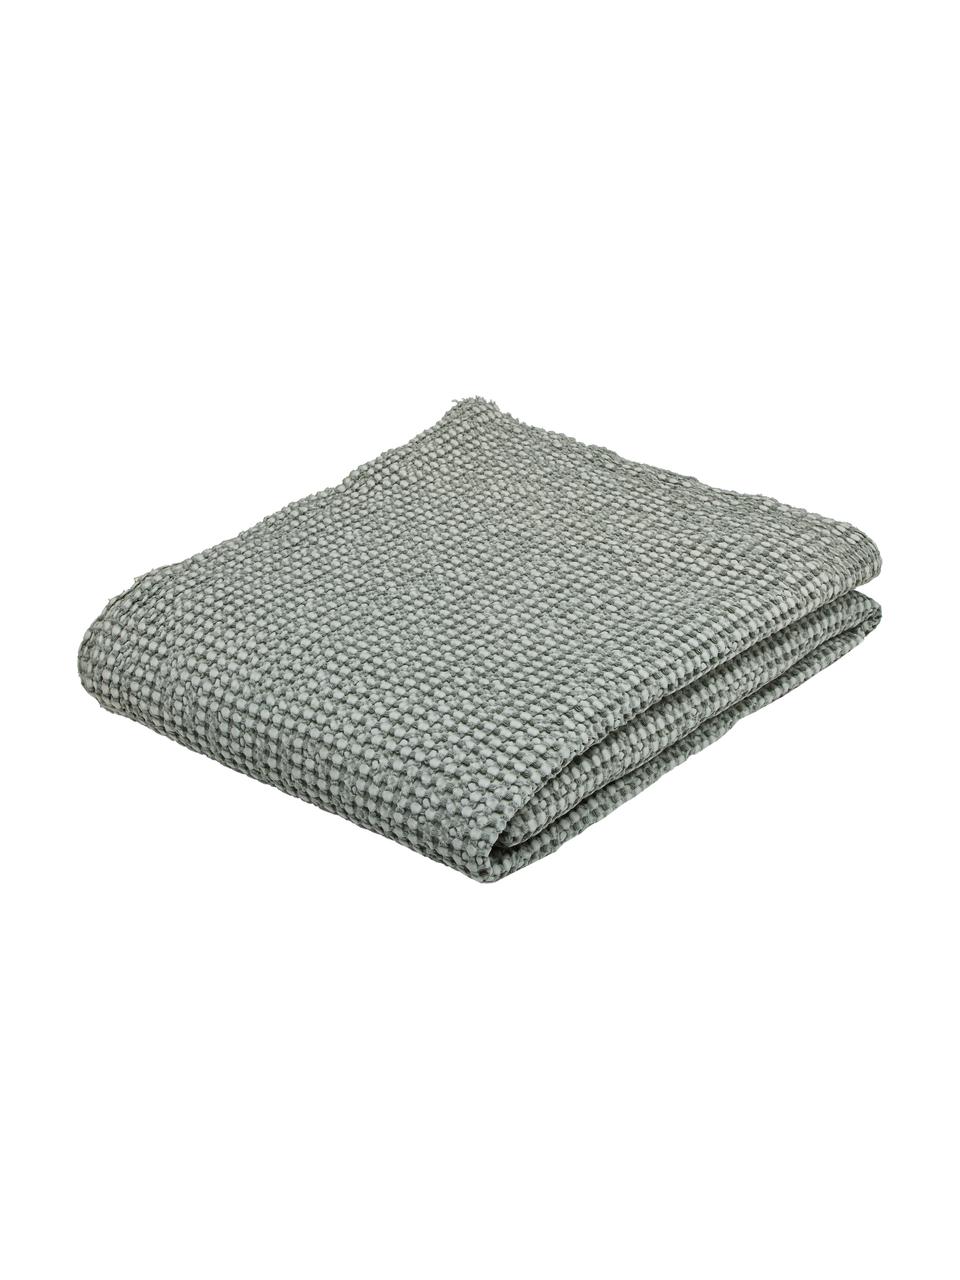 Tagesdecke Vigo mit strukturierter Oberfläche, 100% Baumwolle, Flaschengrün, B 220 x L 240 cm (für Betten bis 180 x 200 cm)